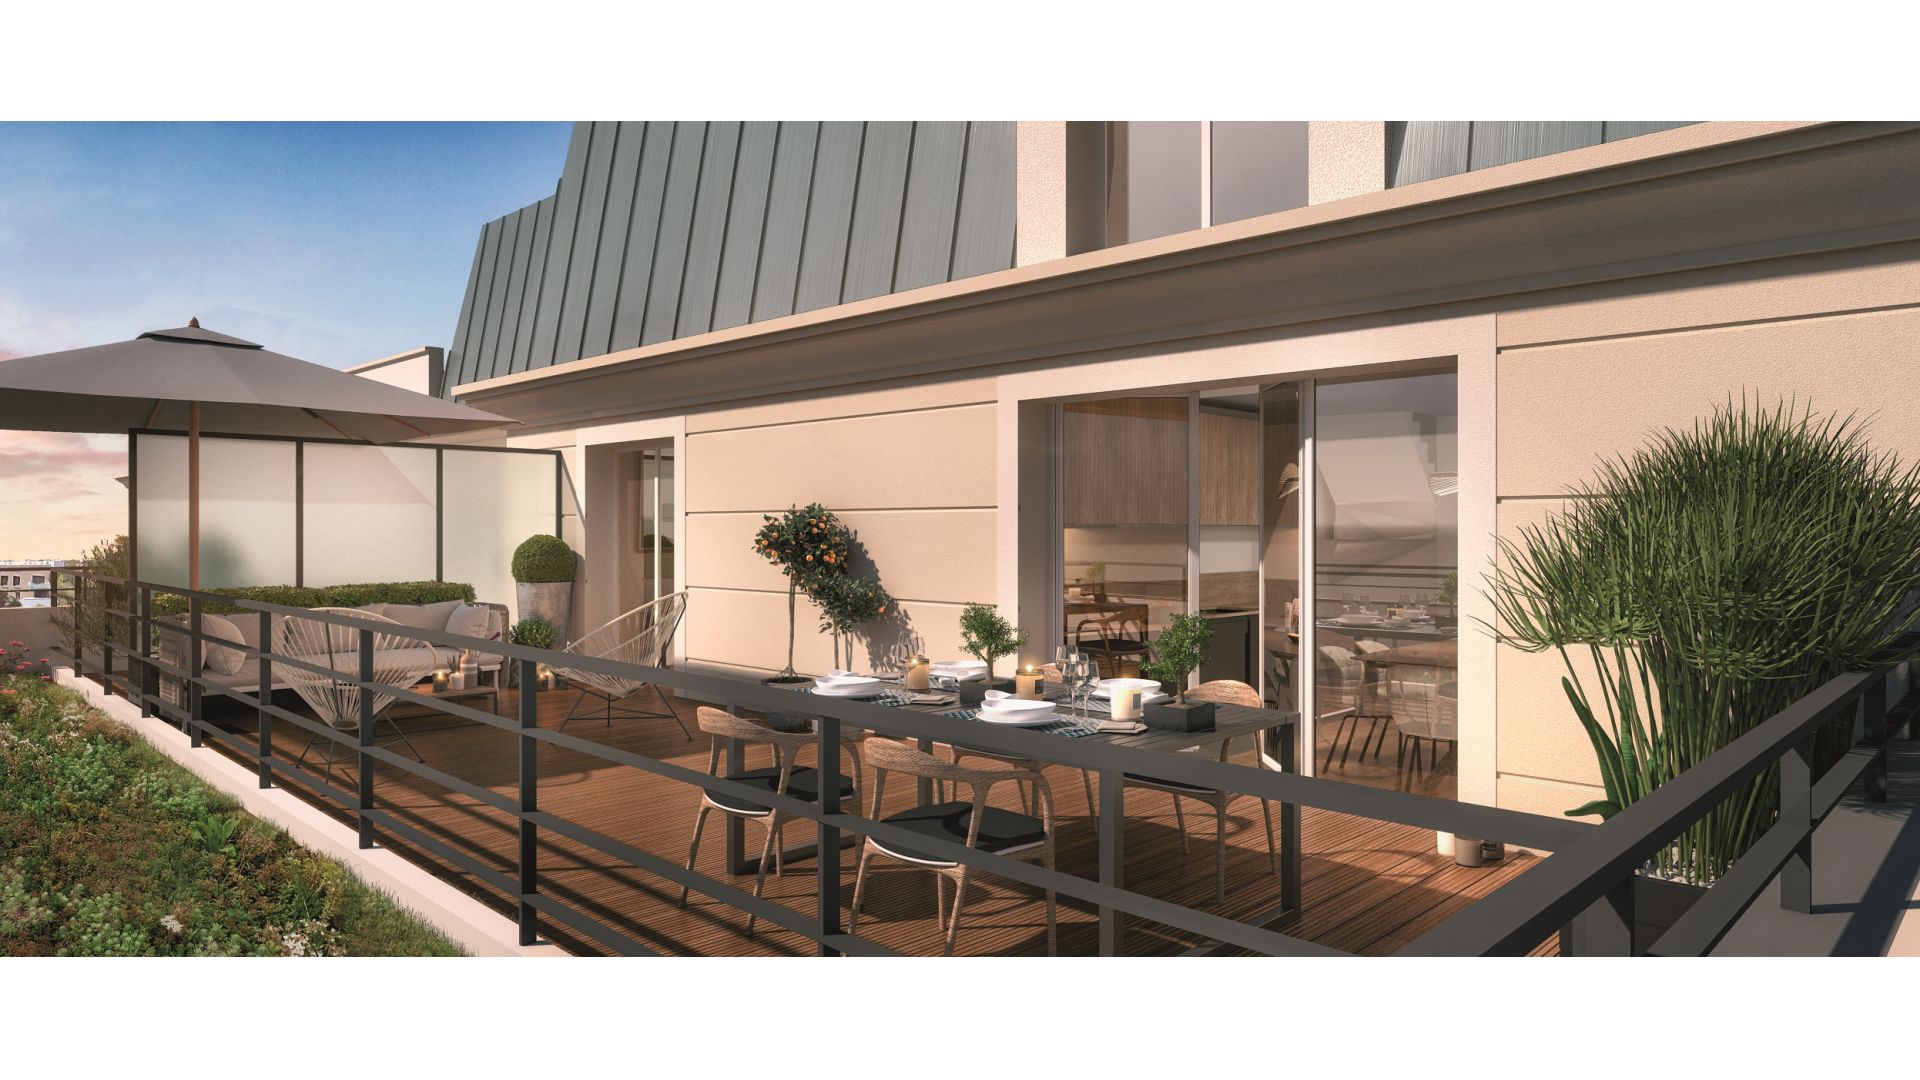 Greencity immobilier - achat appartements neufs du T1 au T4 Duplex - Résidence Le Puccini - 94500 Champigny-sur-Marne - vue terrasse